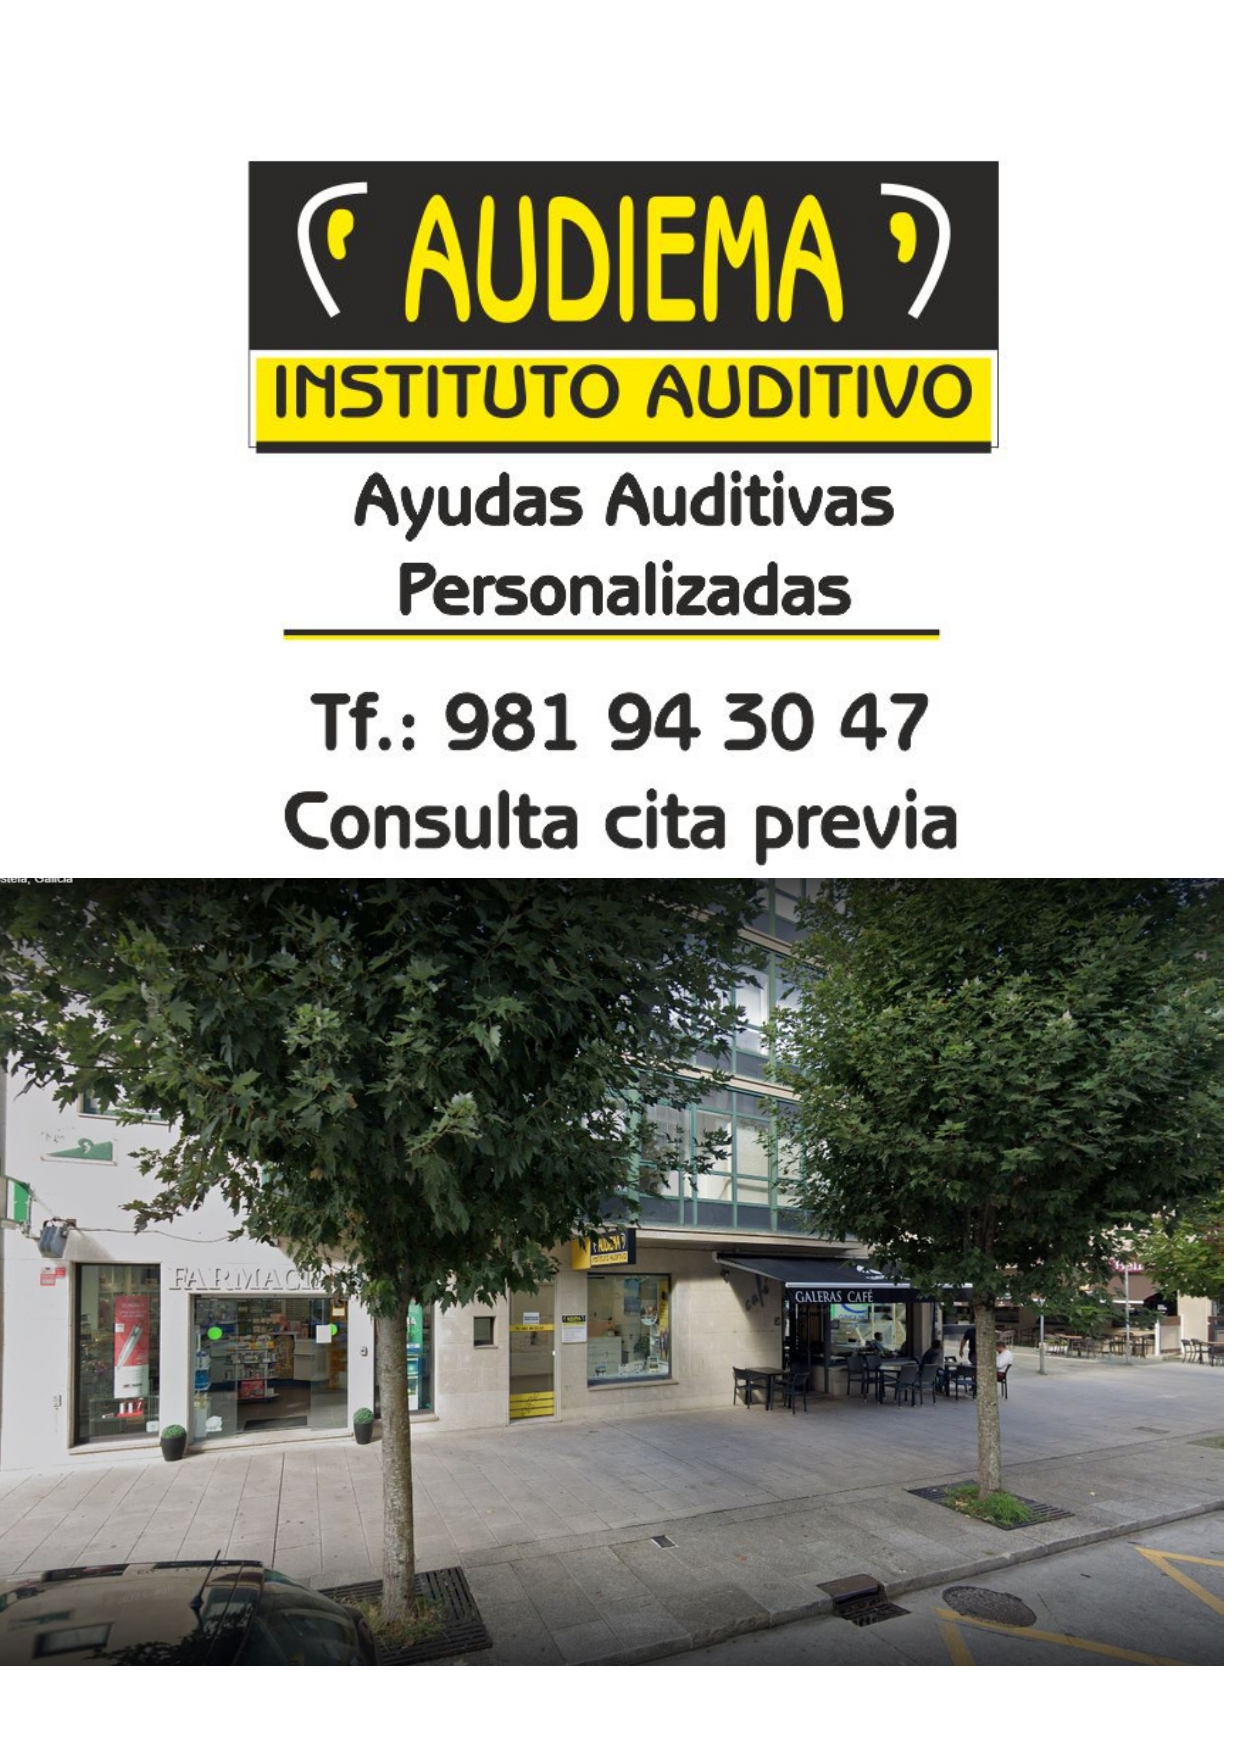 Images Audiema Instituto Auditivo